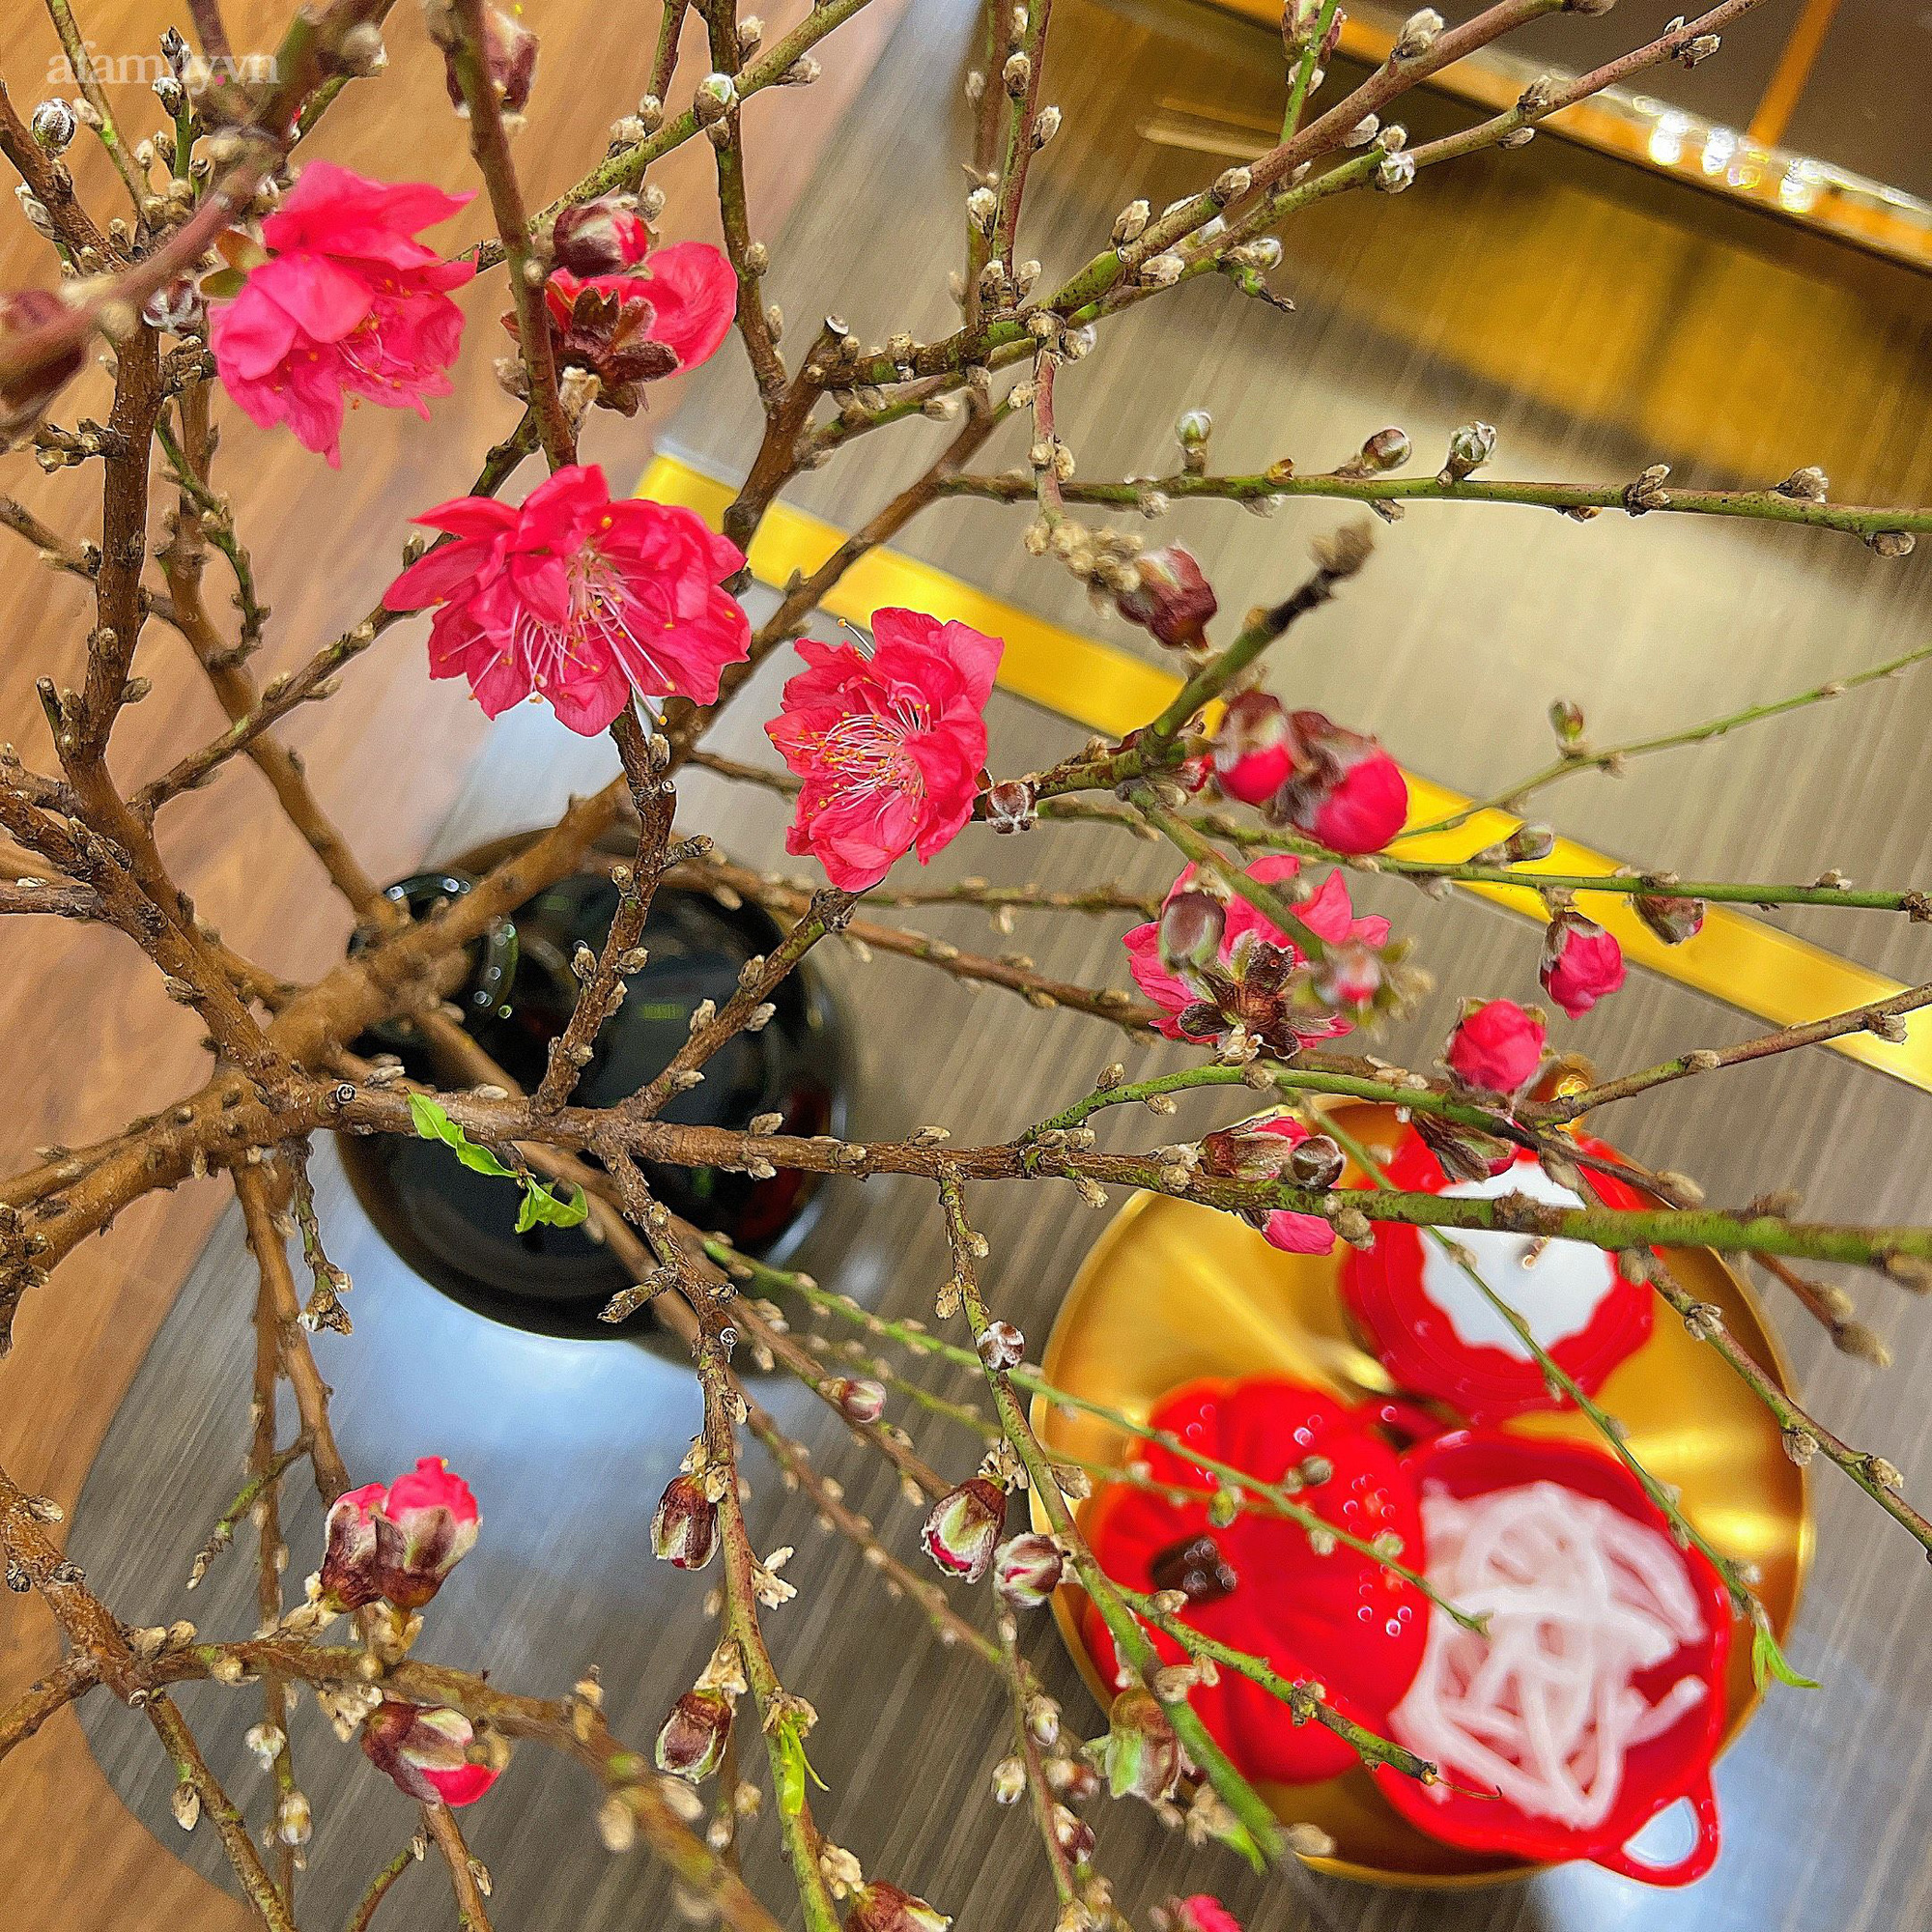 Mùng 3 Tết không gian sống của gia đình Hà Nội vẫn đẹp nức nở nhờ khéo léo trang trí hoa tươi và các món đồ decor  - Ảnh 8.